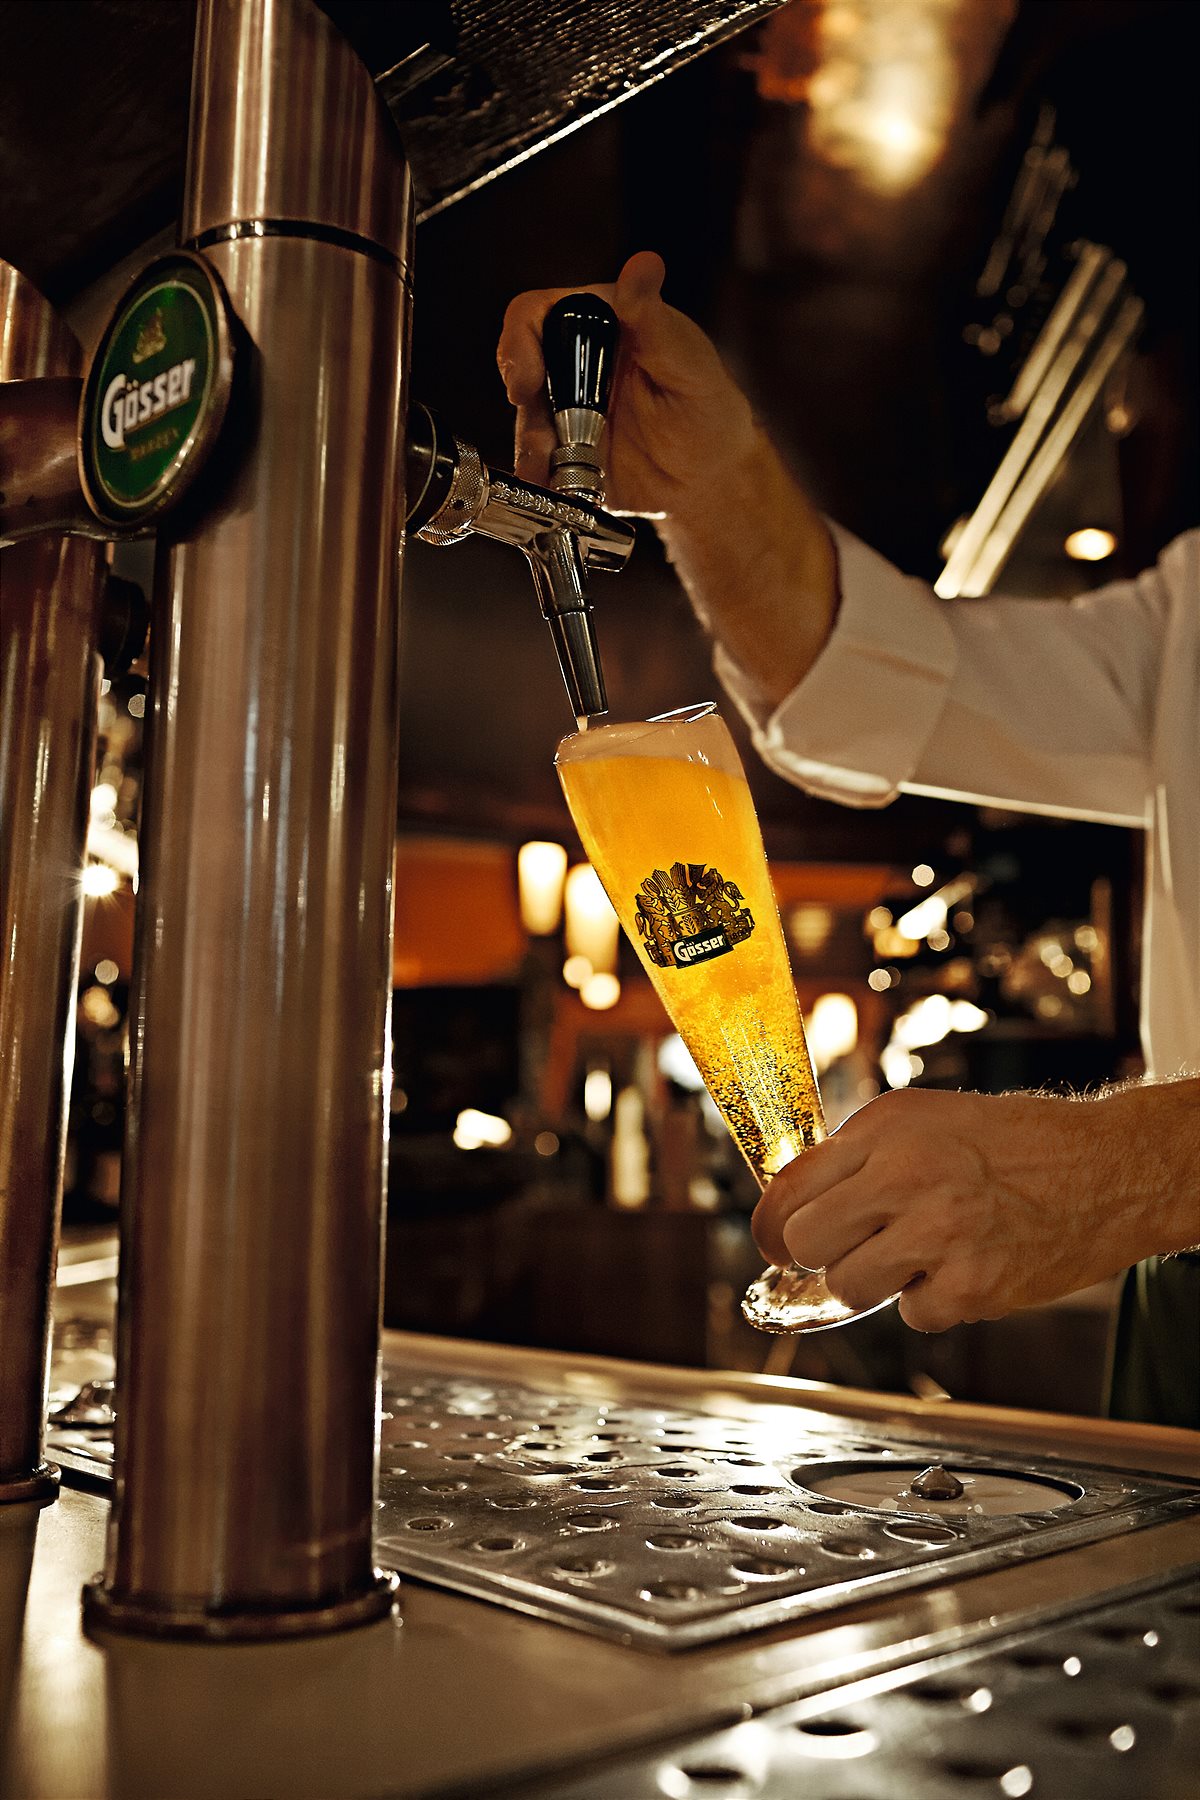 Bierliebhaber freuen sich schon wieder sehnlichst auf den Genuss von frisch gezapftem Bier vom Fass.